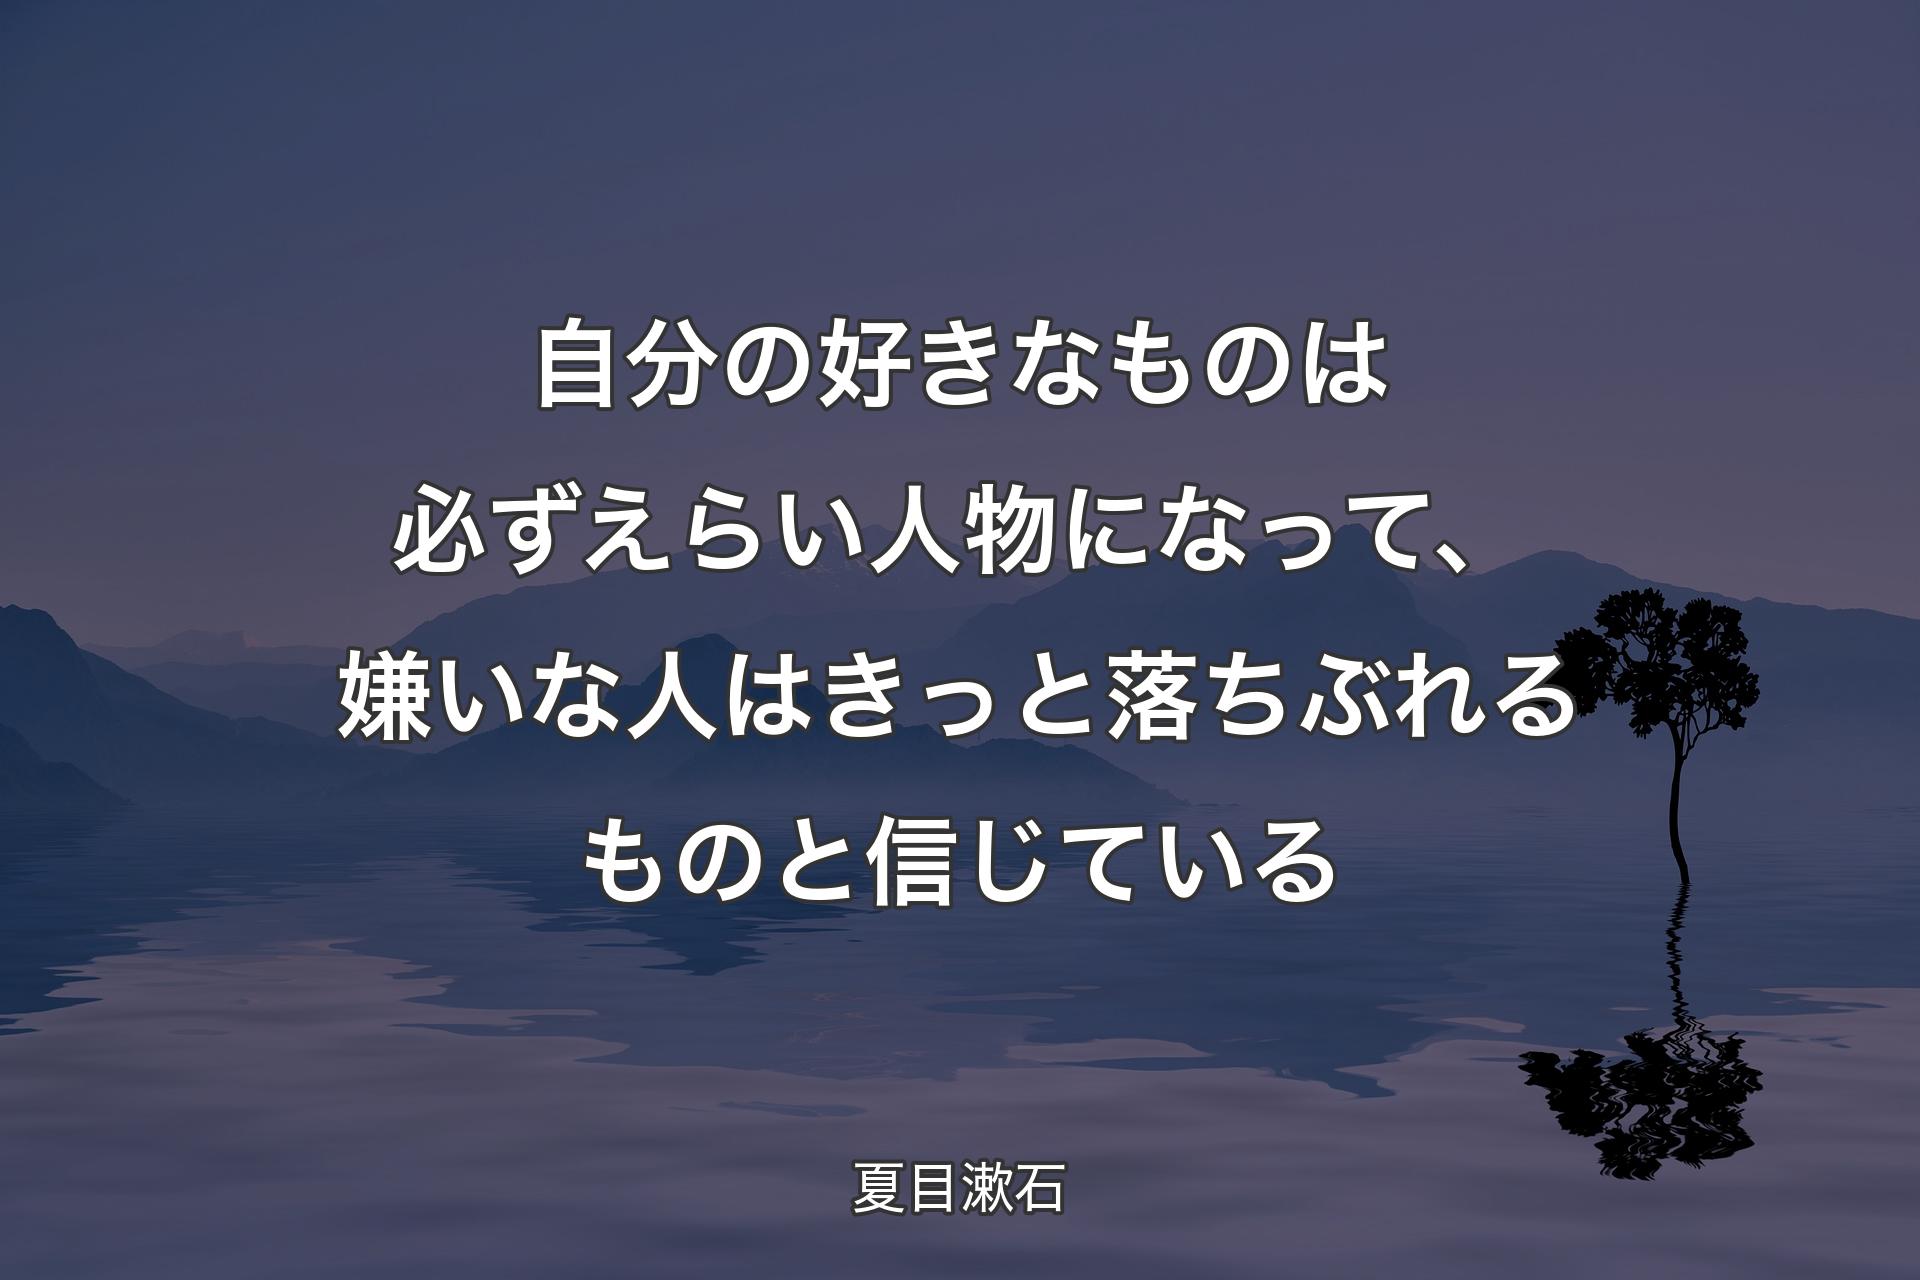 自分の好きなものは必ずえらい人物になって、嫌いな人はきっと落ちぶれるものと信じている - 夏目漱石